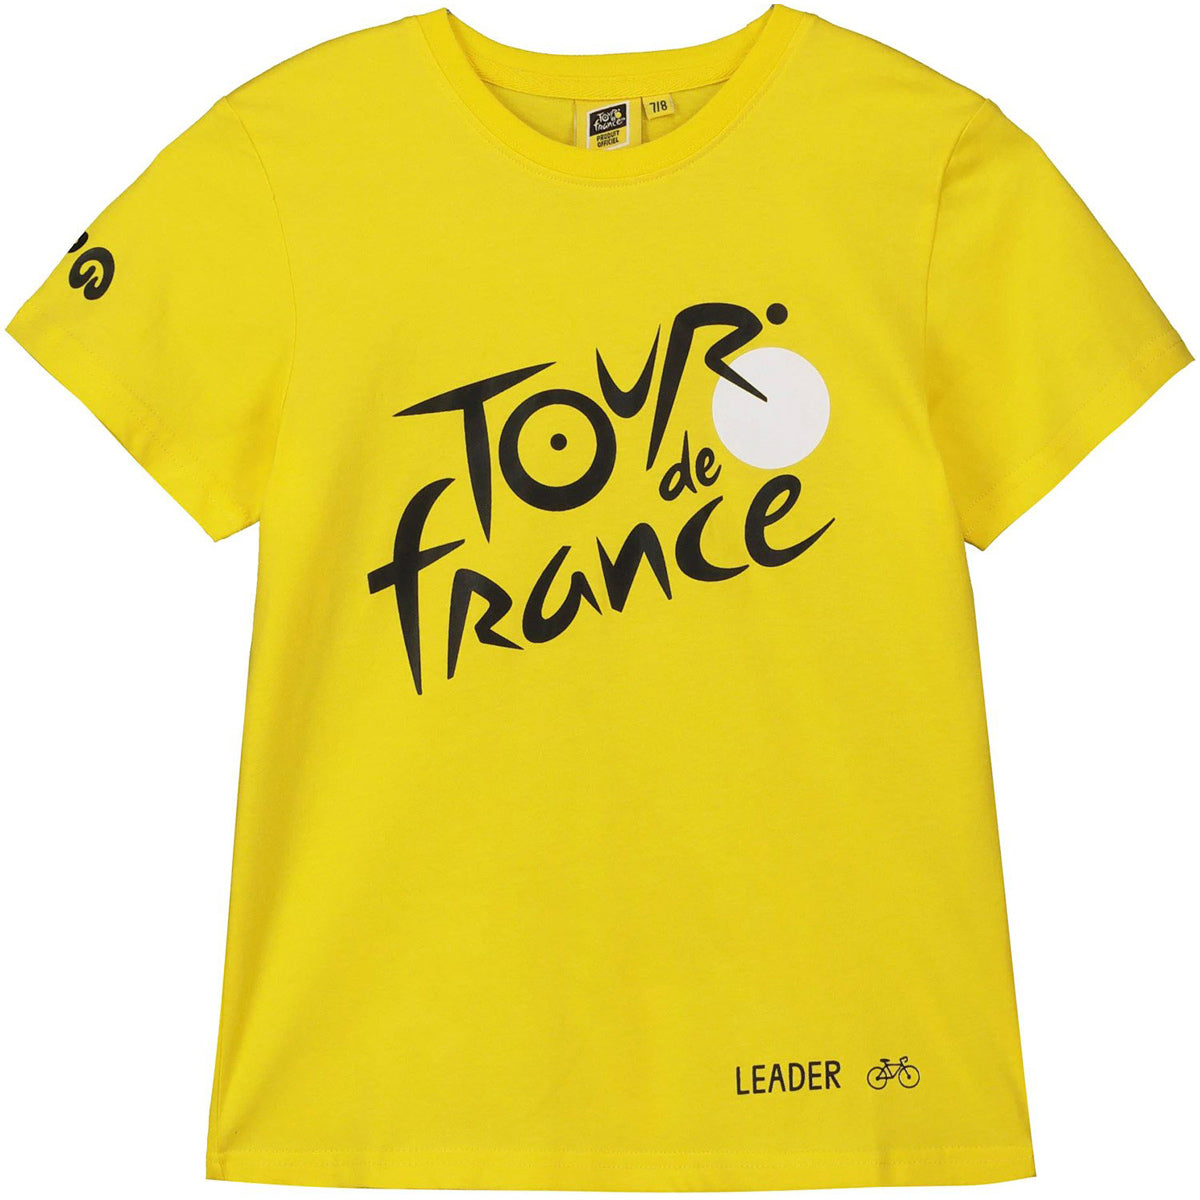 Yellow Tour de France tdf-se-3060 J10 Unisex Kids T-Shirt UK: 10/12 a/12 A Manufacturers Size: 10